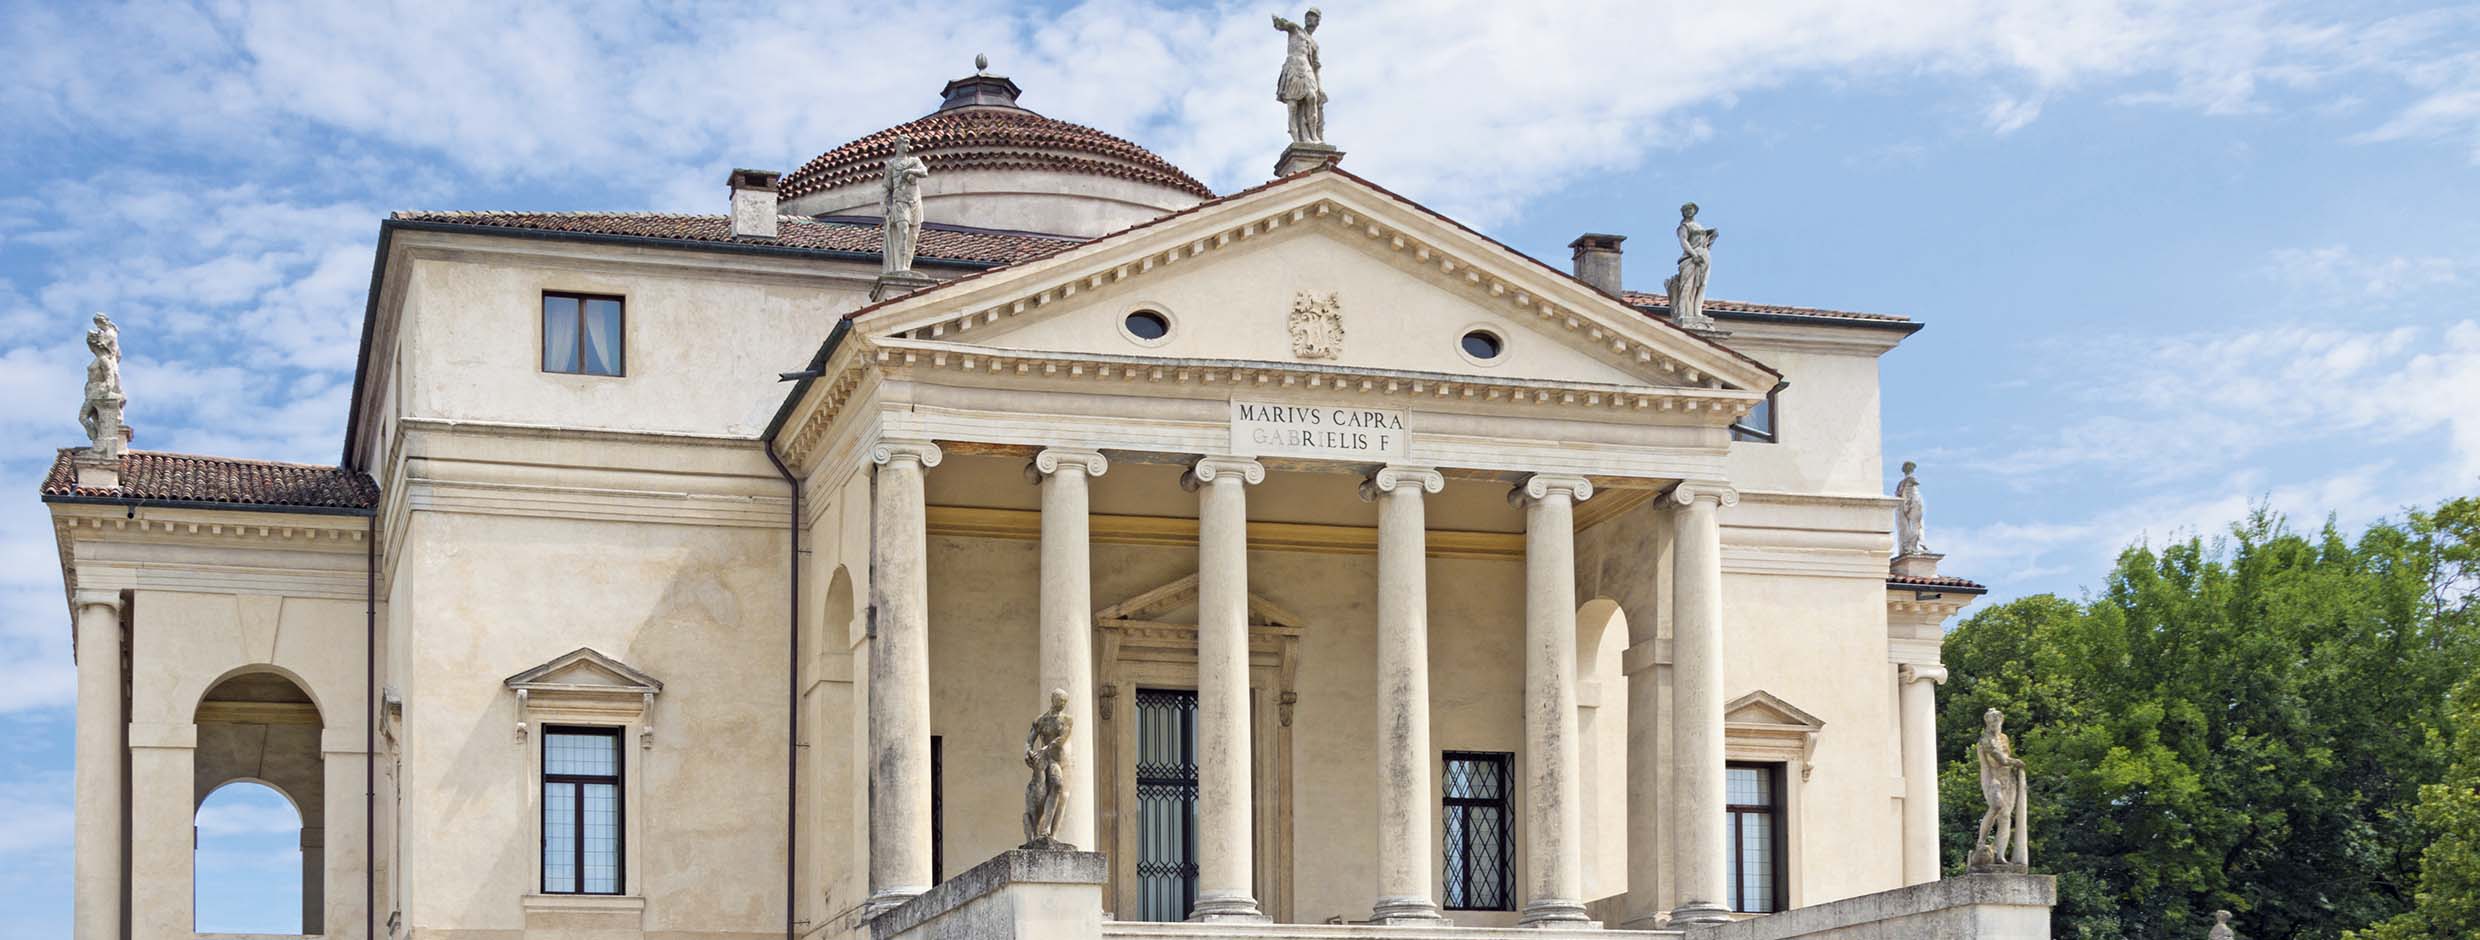 Palladio Veneto